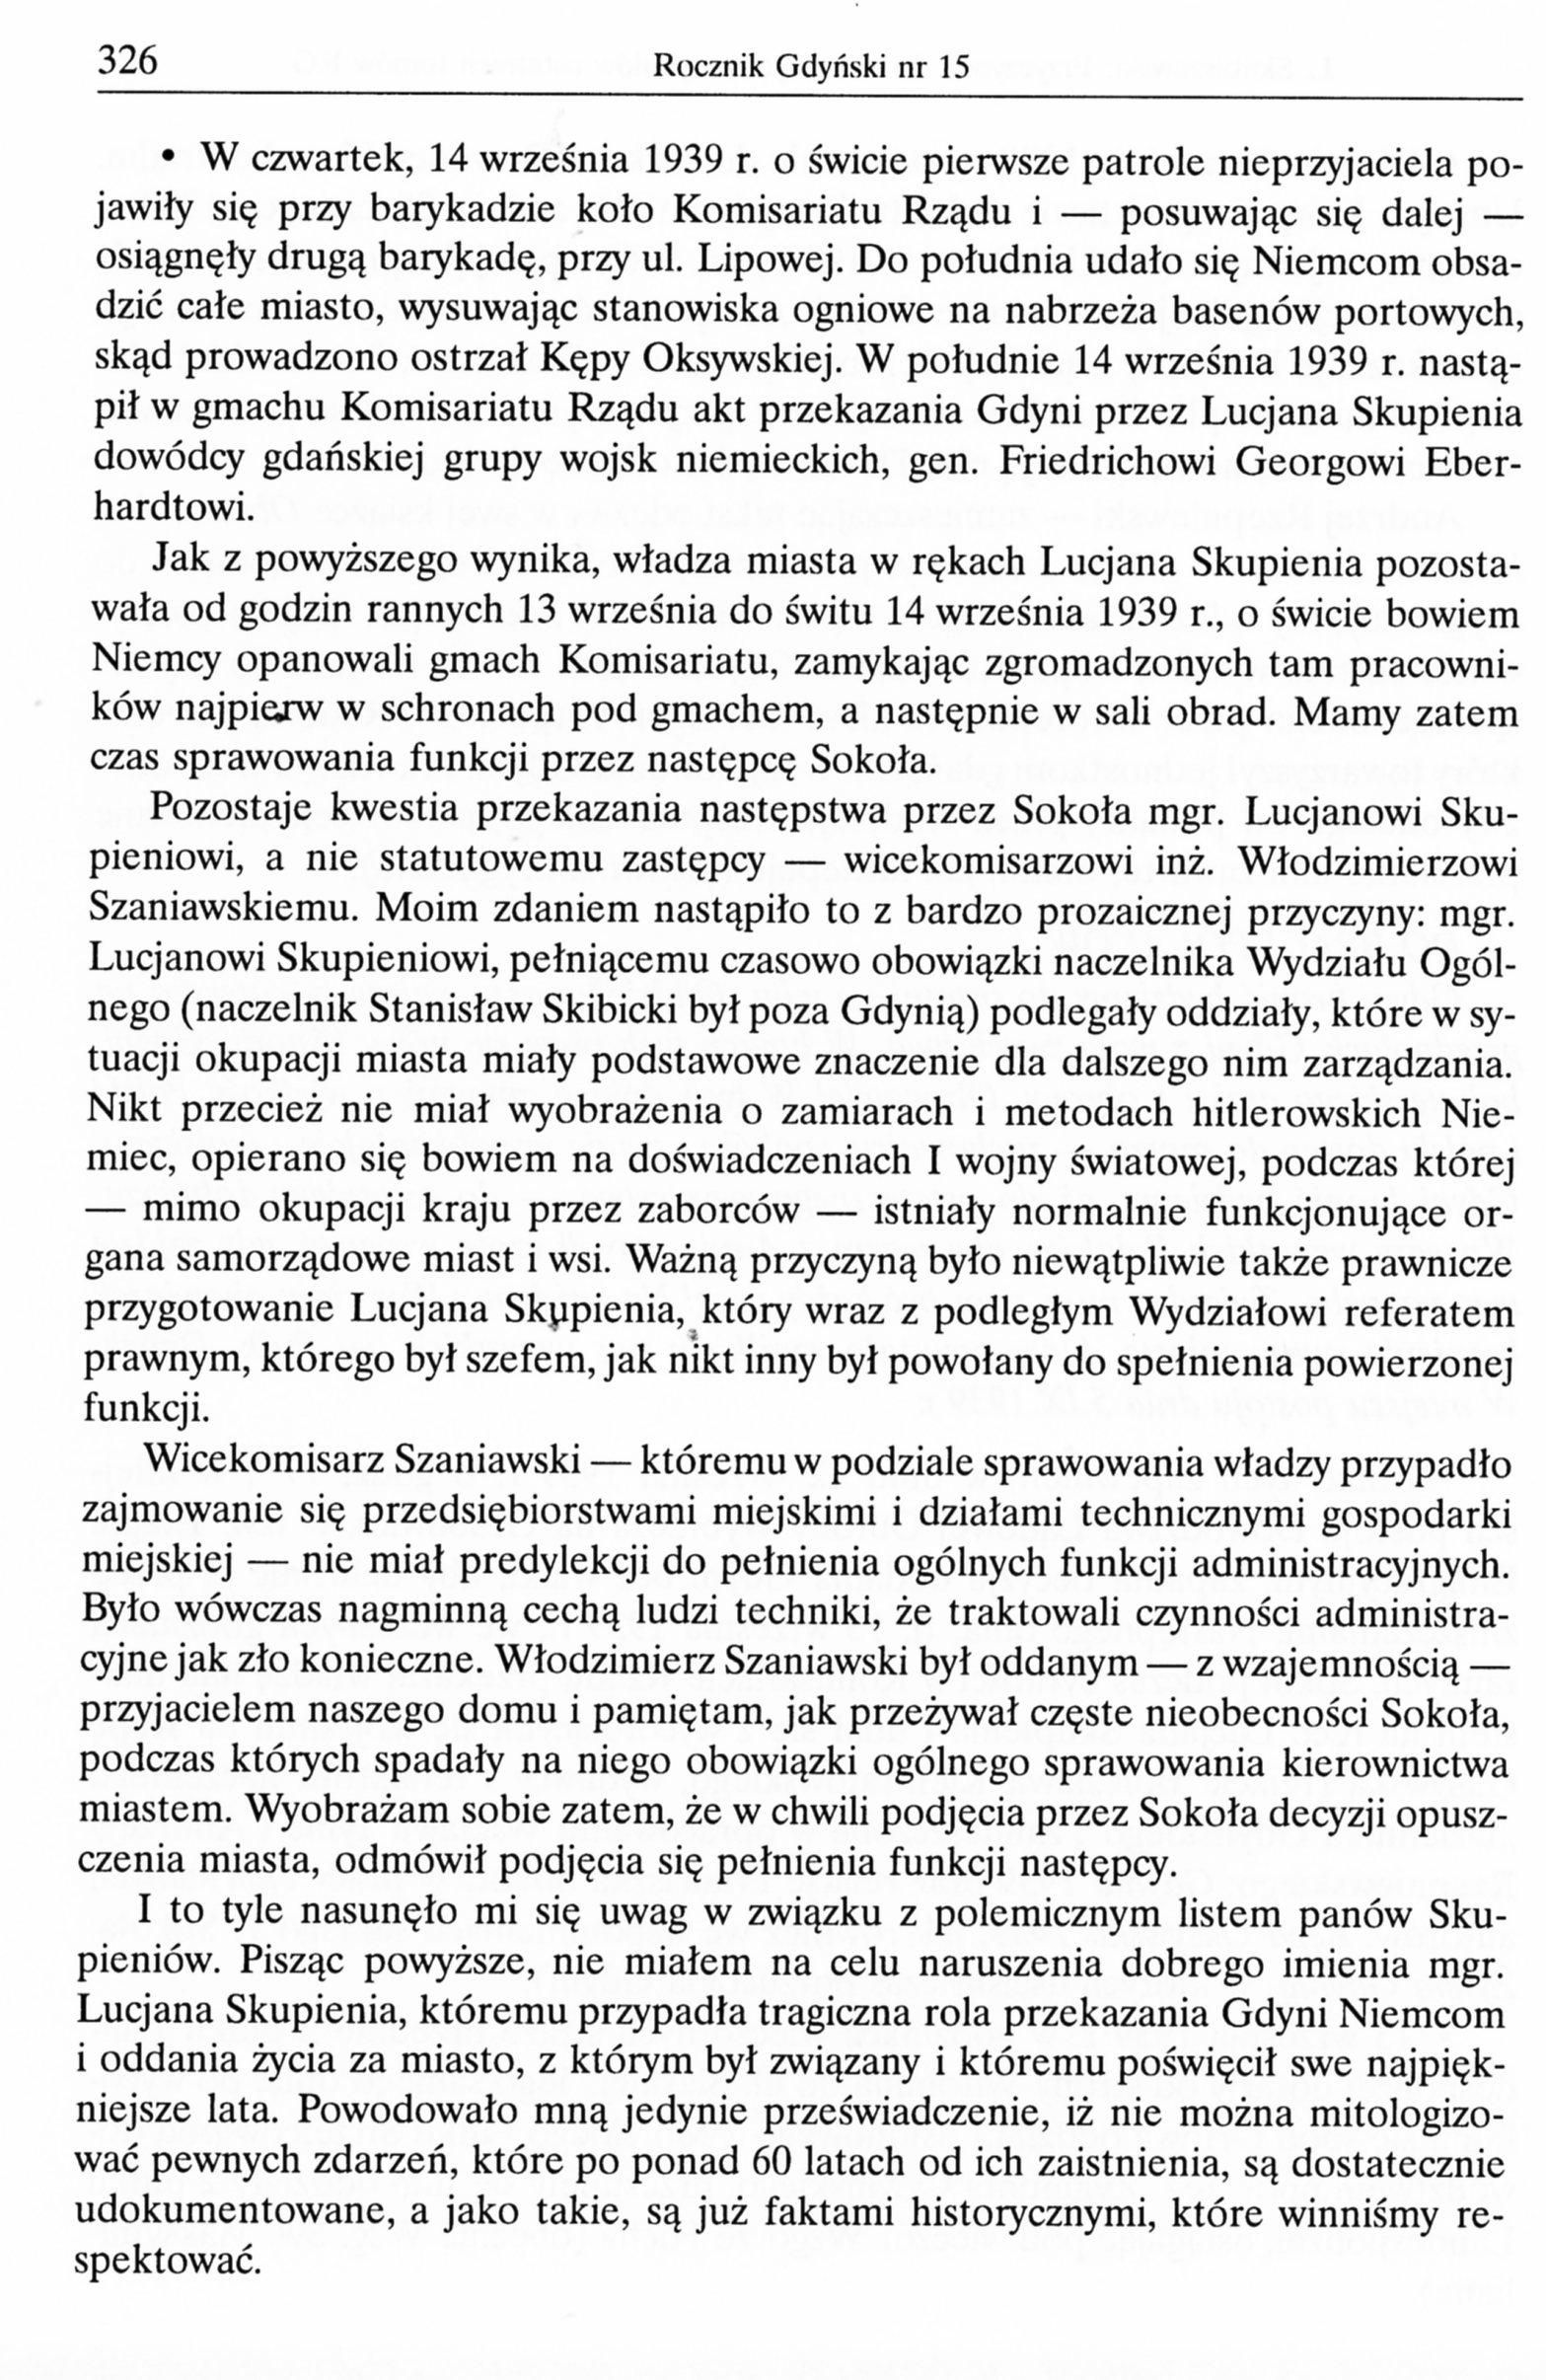 Przyczynek do niektórych artykułów ostatnich tomów "Rocznika Gdyńskiego"